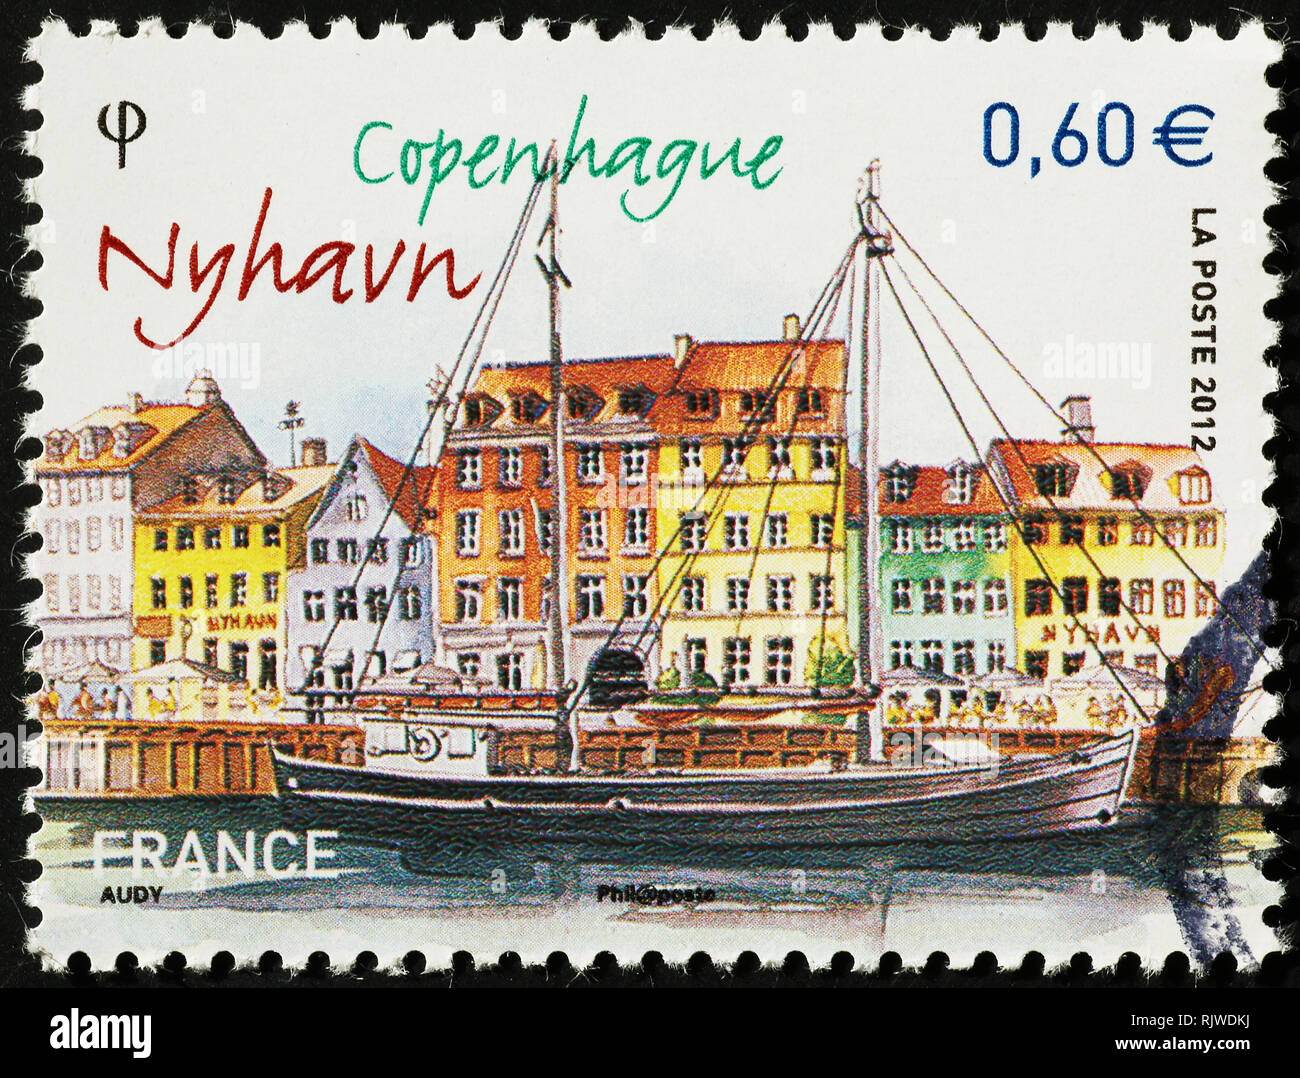 Juego con regalo de lotes de sellos - final - Página 11 Nyhavn-ancient-harbor-of-copenhagen-on-postage-stamp-RJWDKJ